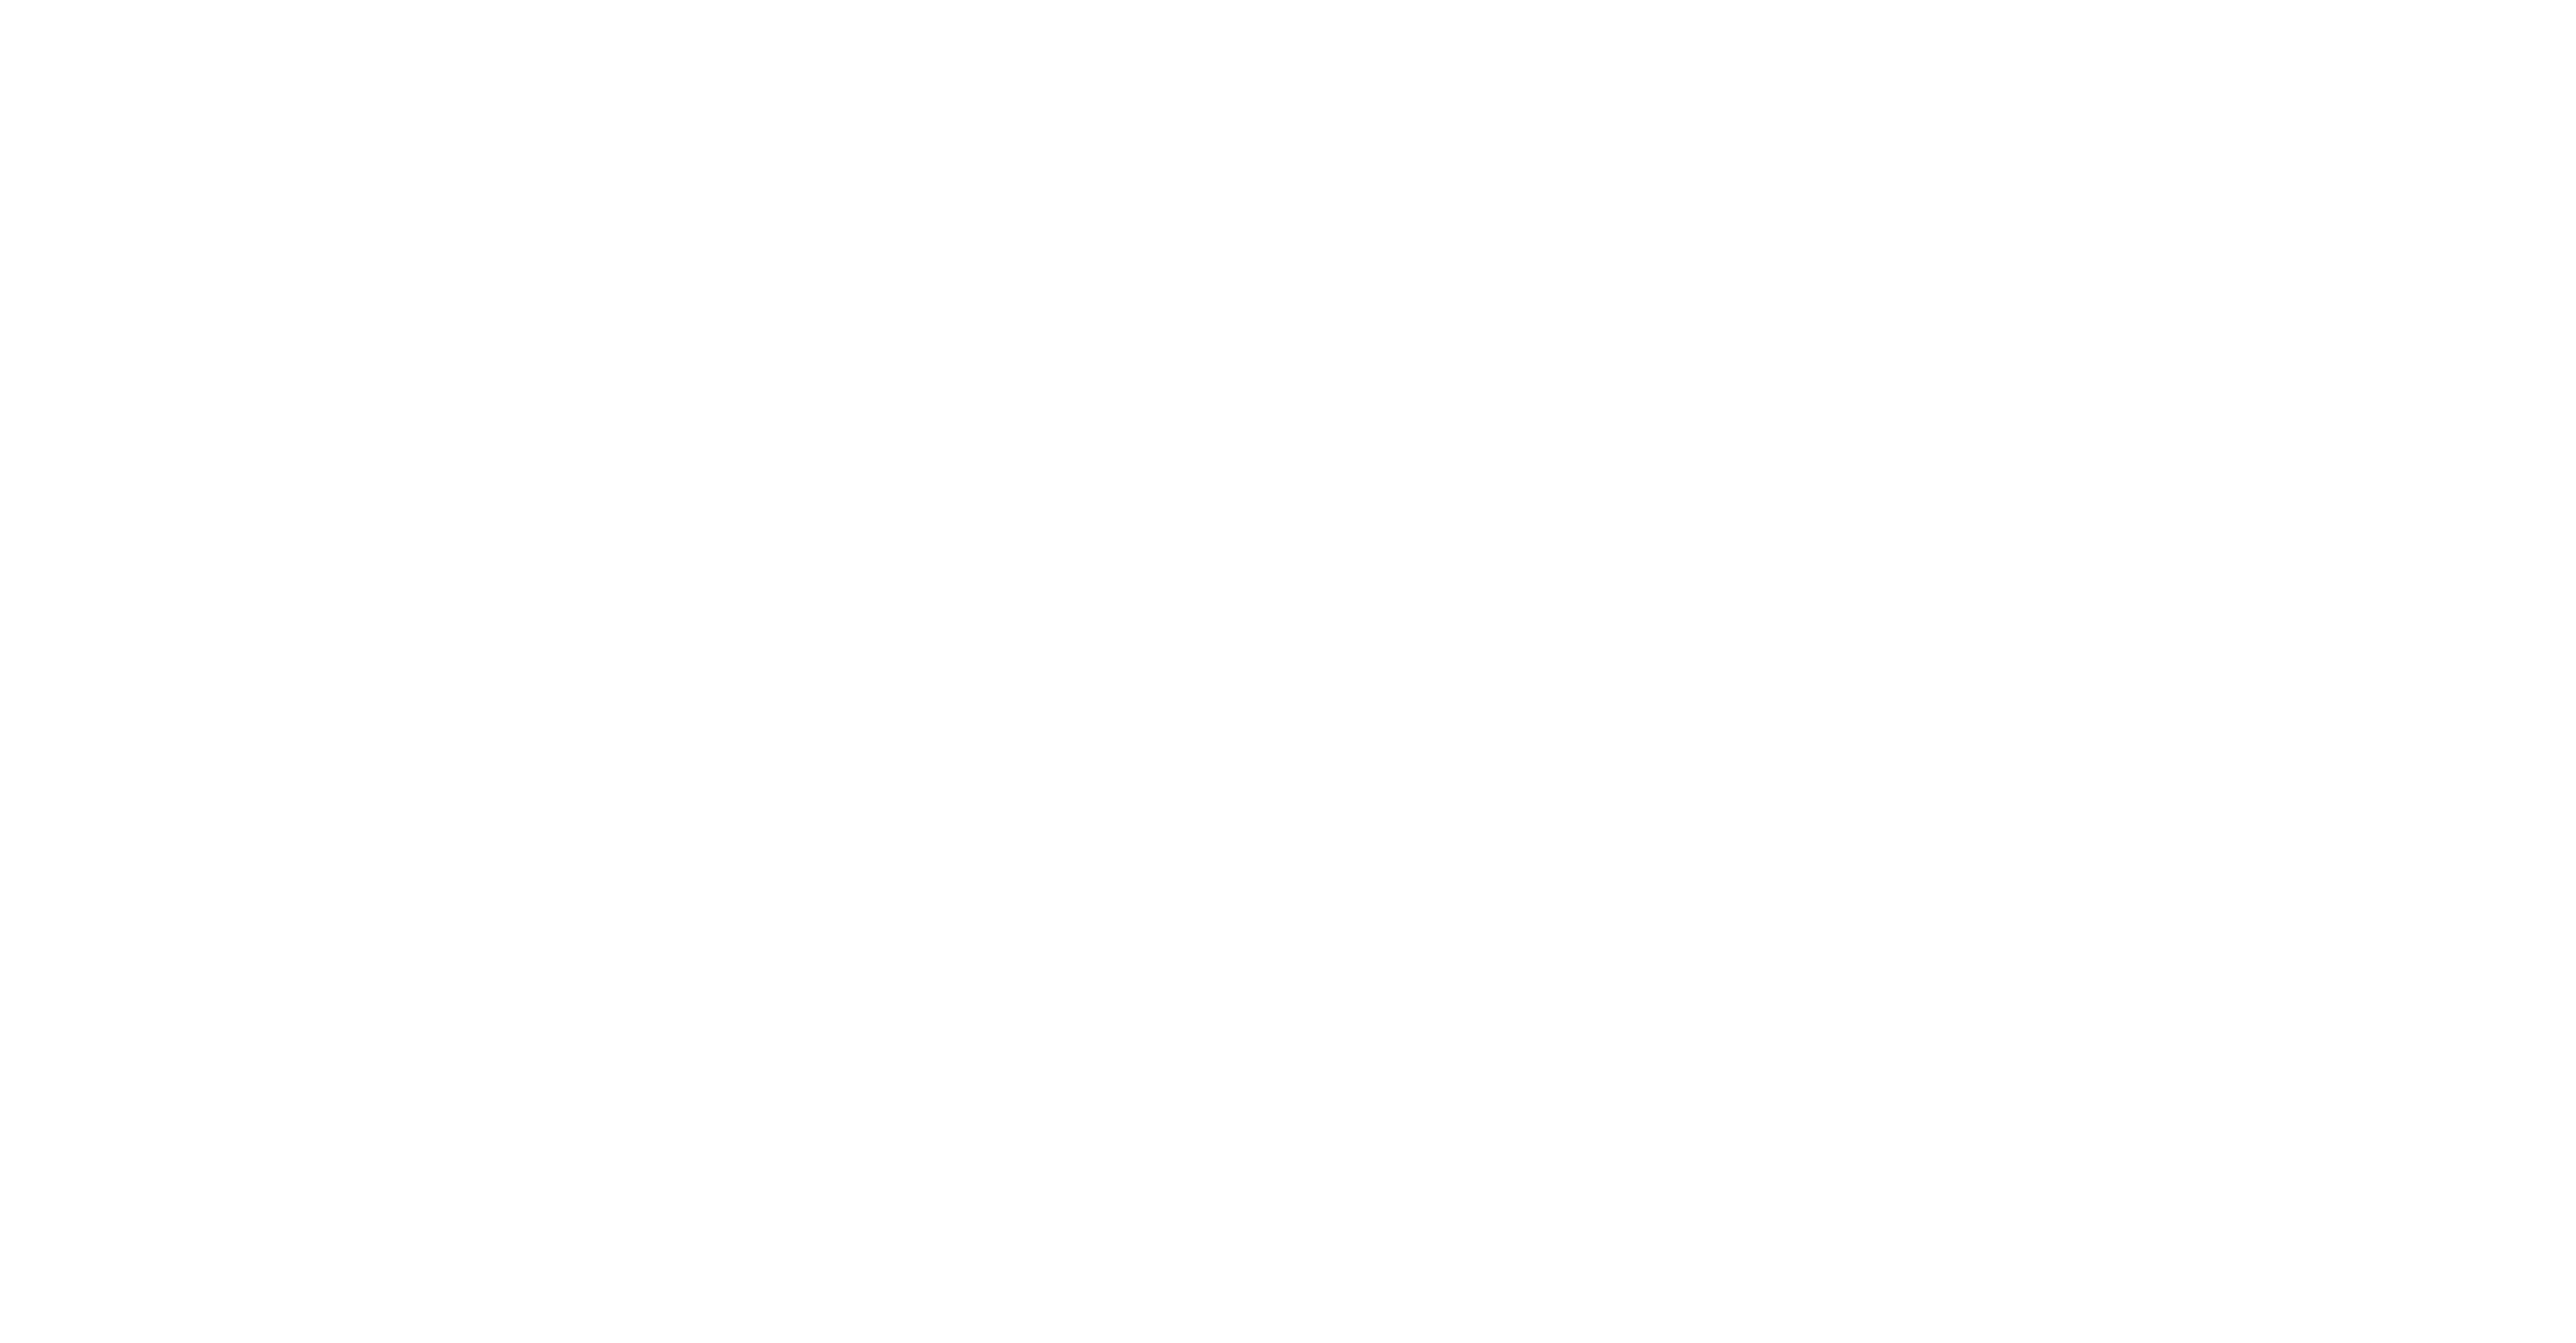 MeTV Toons